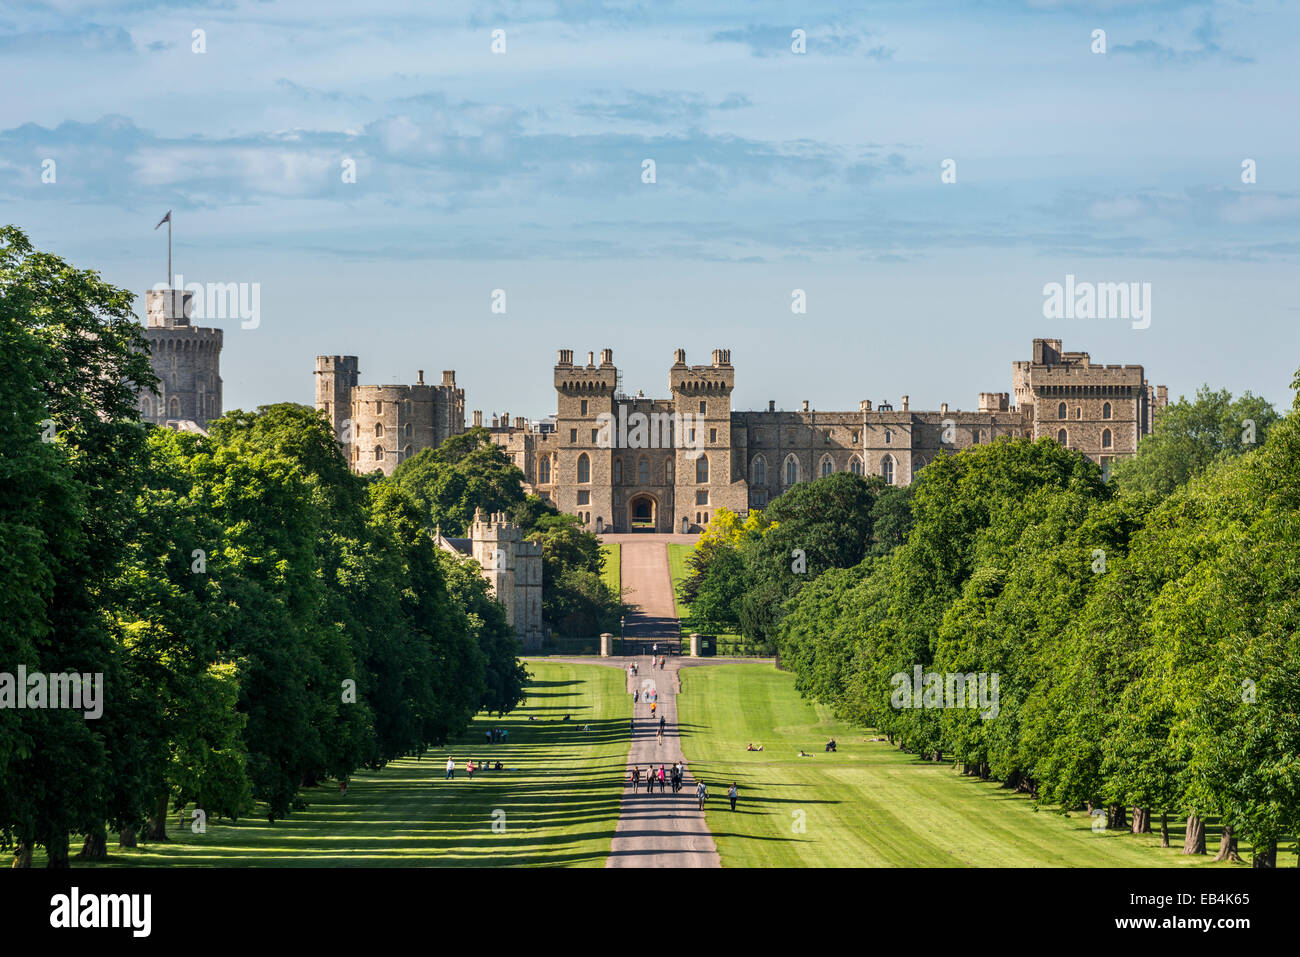 Le Château de Windsor est une résidence royale à Windsor dans le comté anglais du Berkshire. Vu ici à partir de la Longue Marche. Banque D'Images